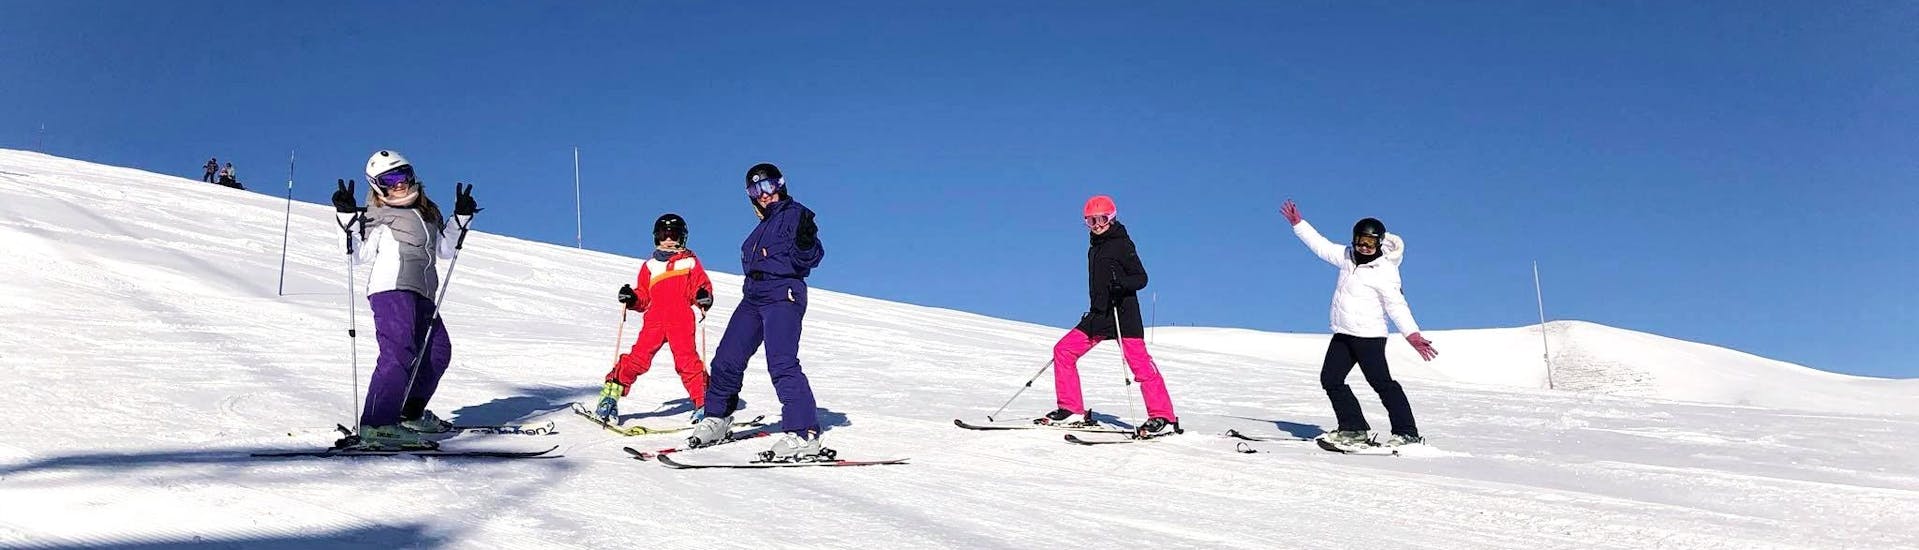 Cours de ski Adultes - Basse saison.